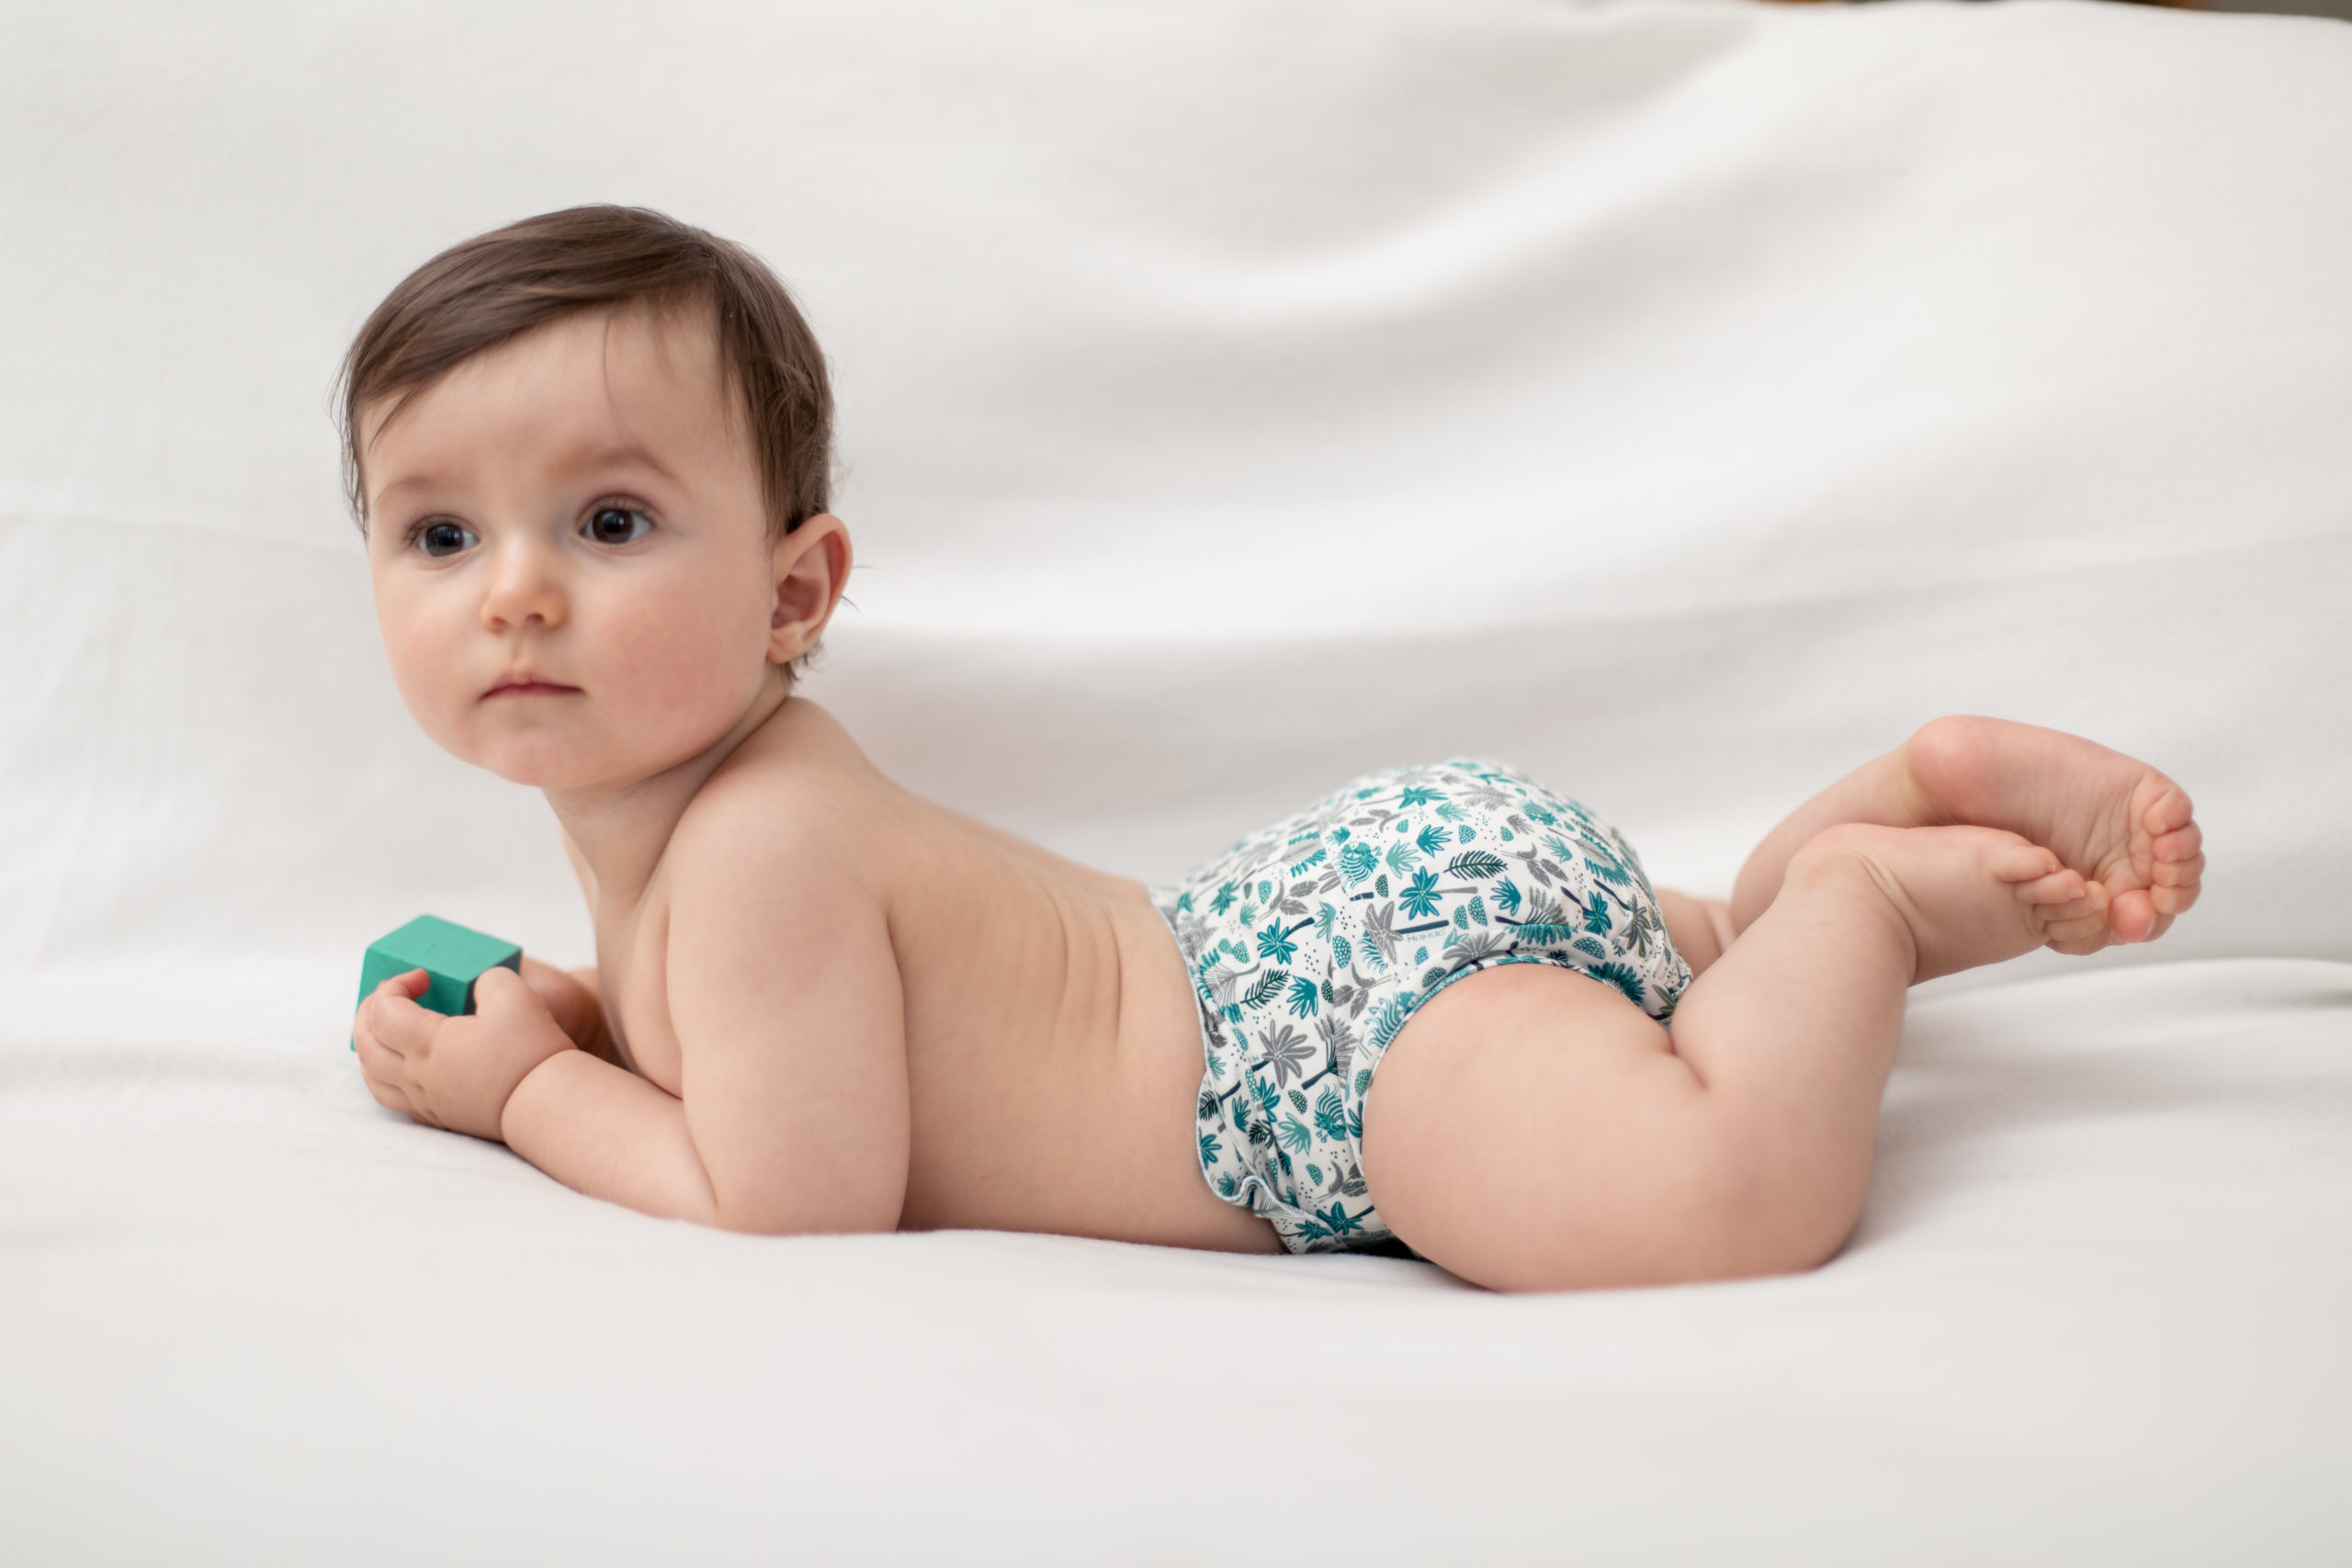 Couche lavable Hamac : 0 produit toxique pour la peau de bébé